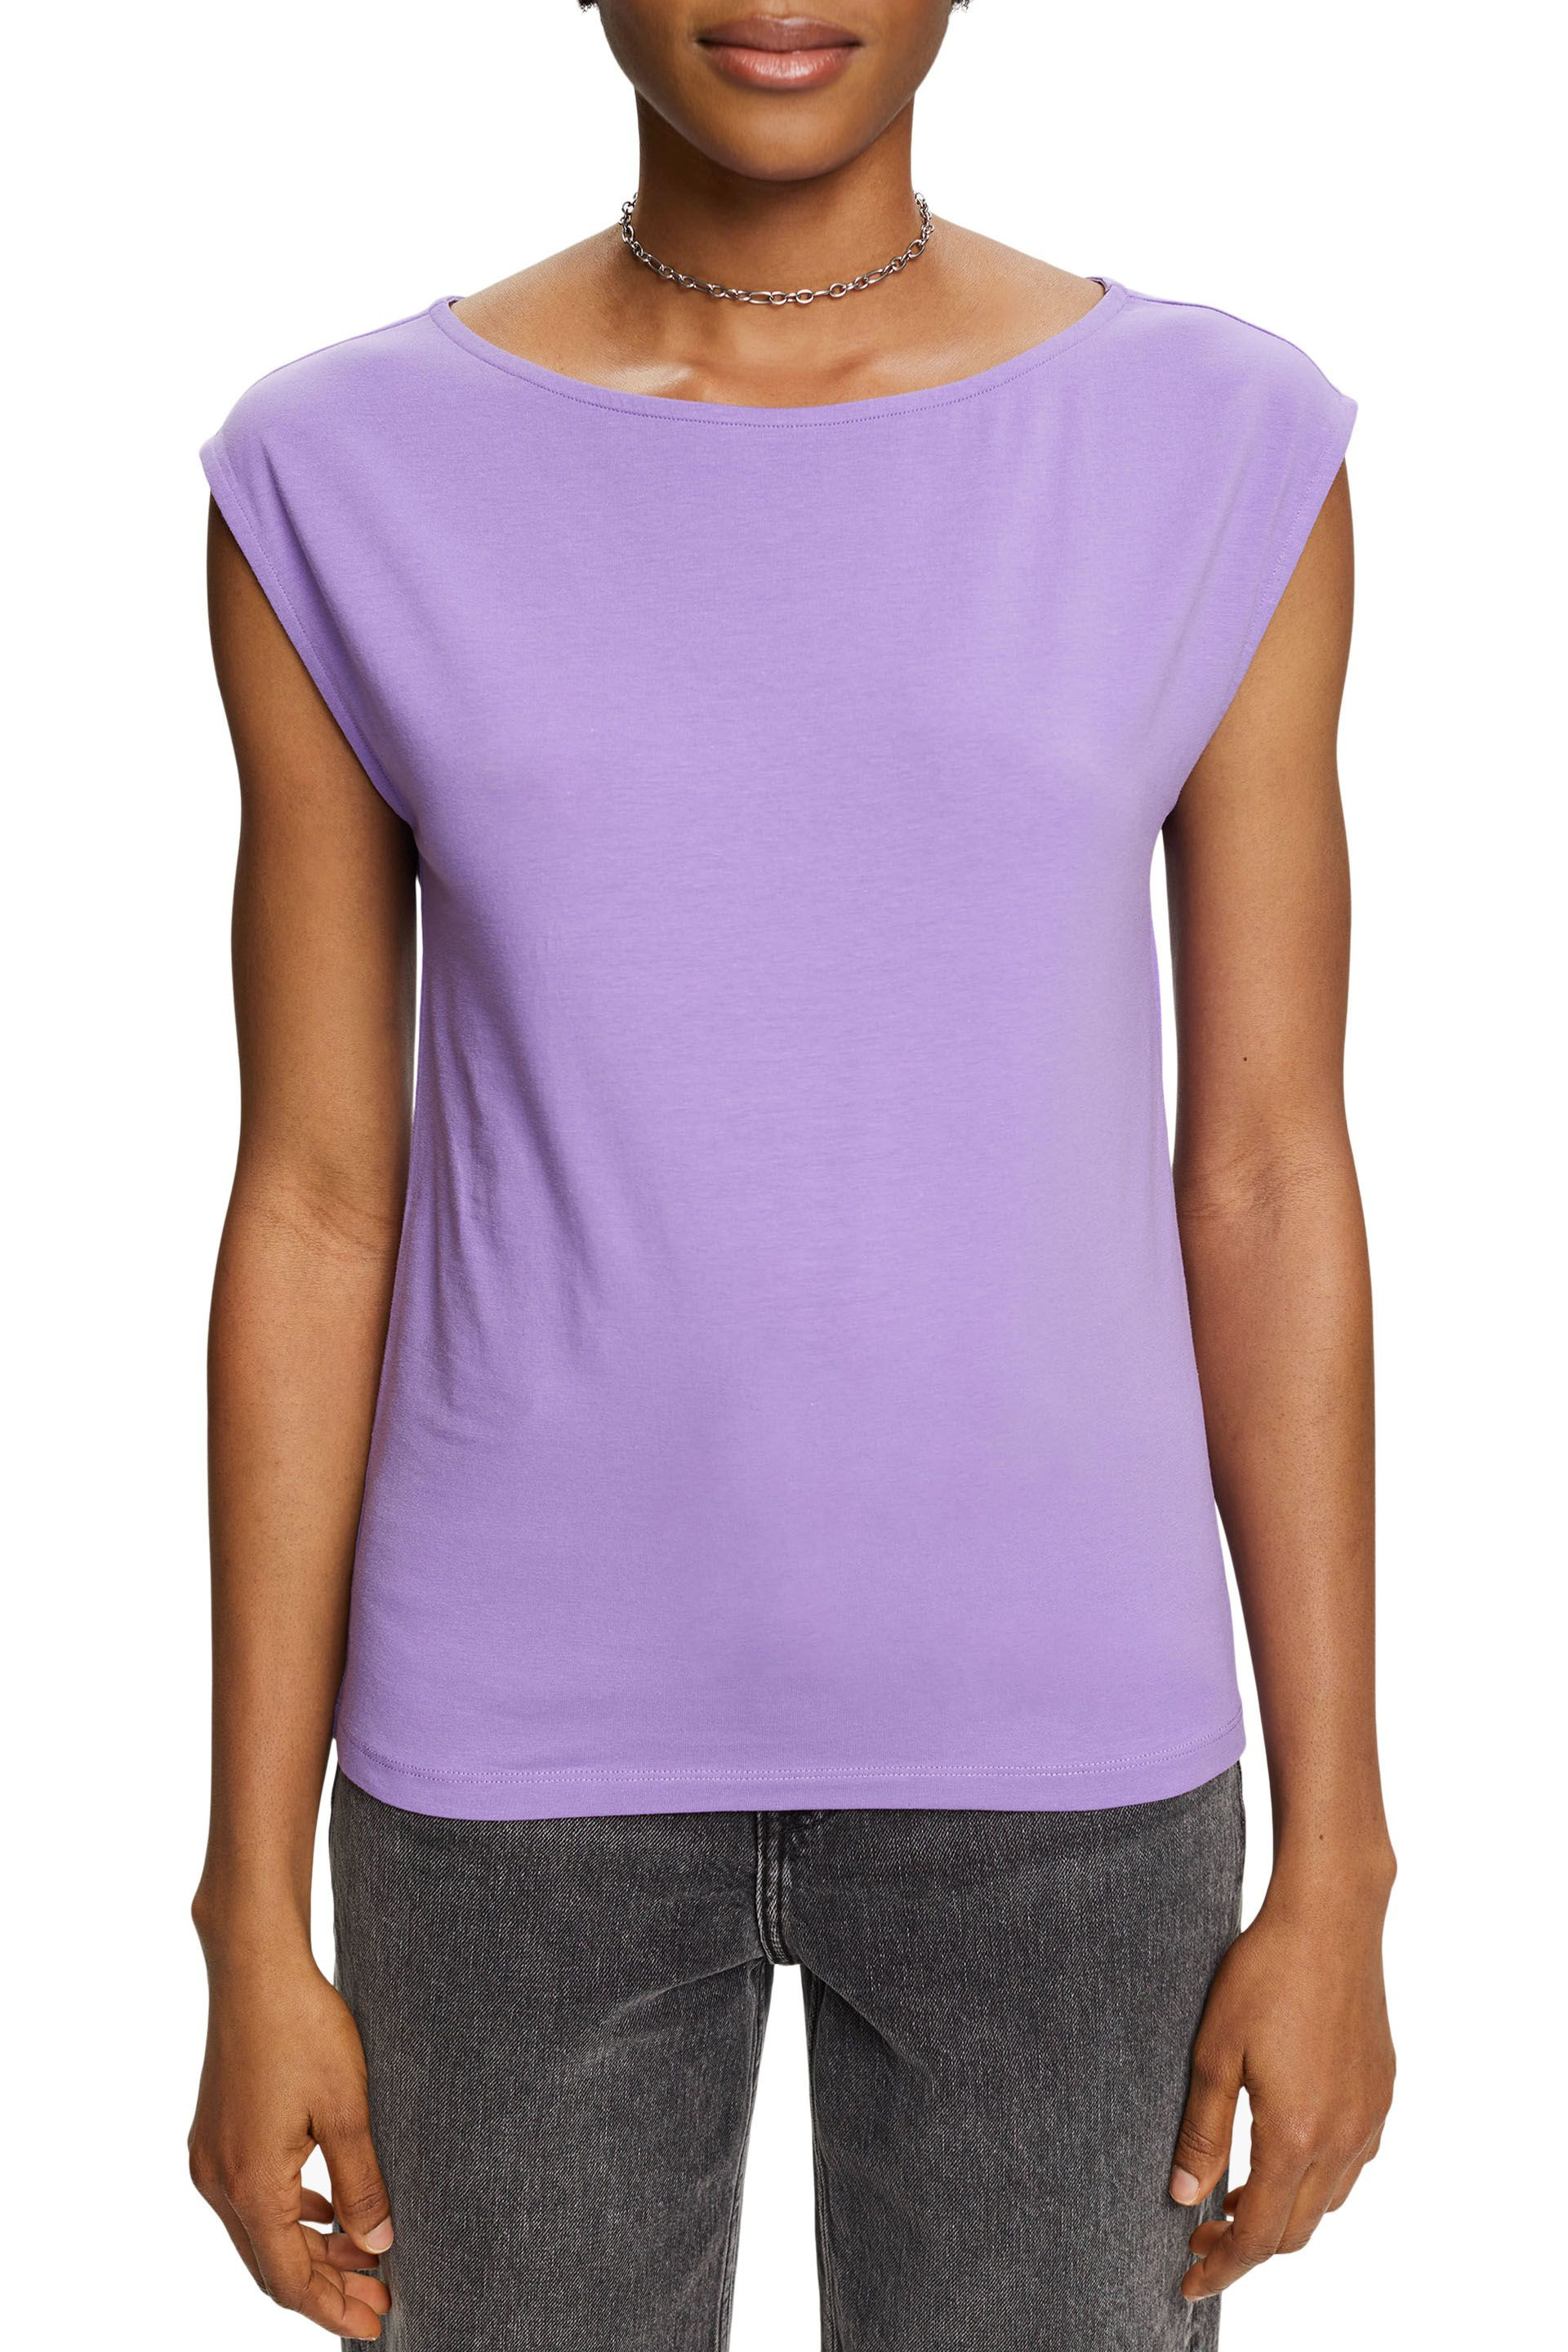 Esprit - Stretch cotton T-shirt, Purple Lilac, large image number 2